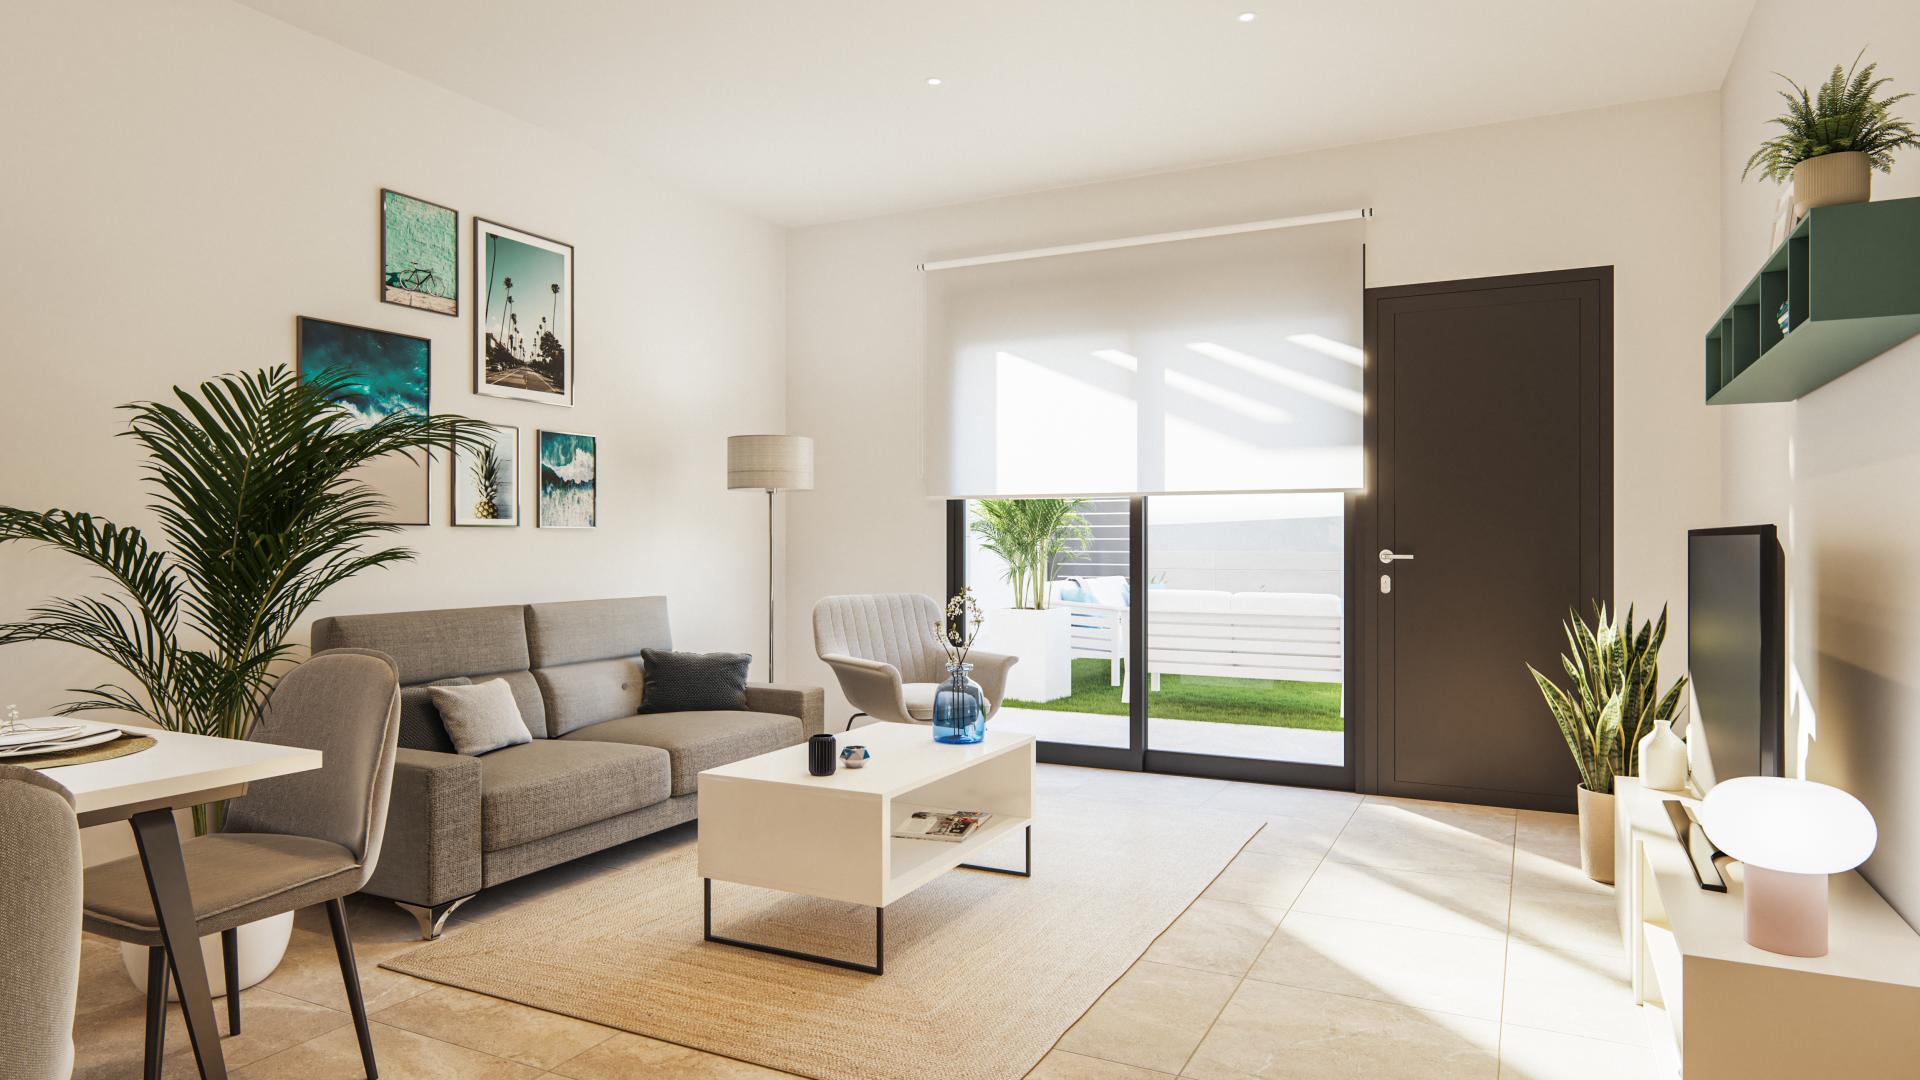 2 !bedroom Appartement met terras ! EN Aguilas - Nieuwbouw in Medvilla Spanje